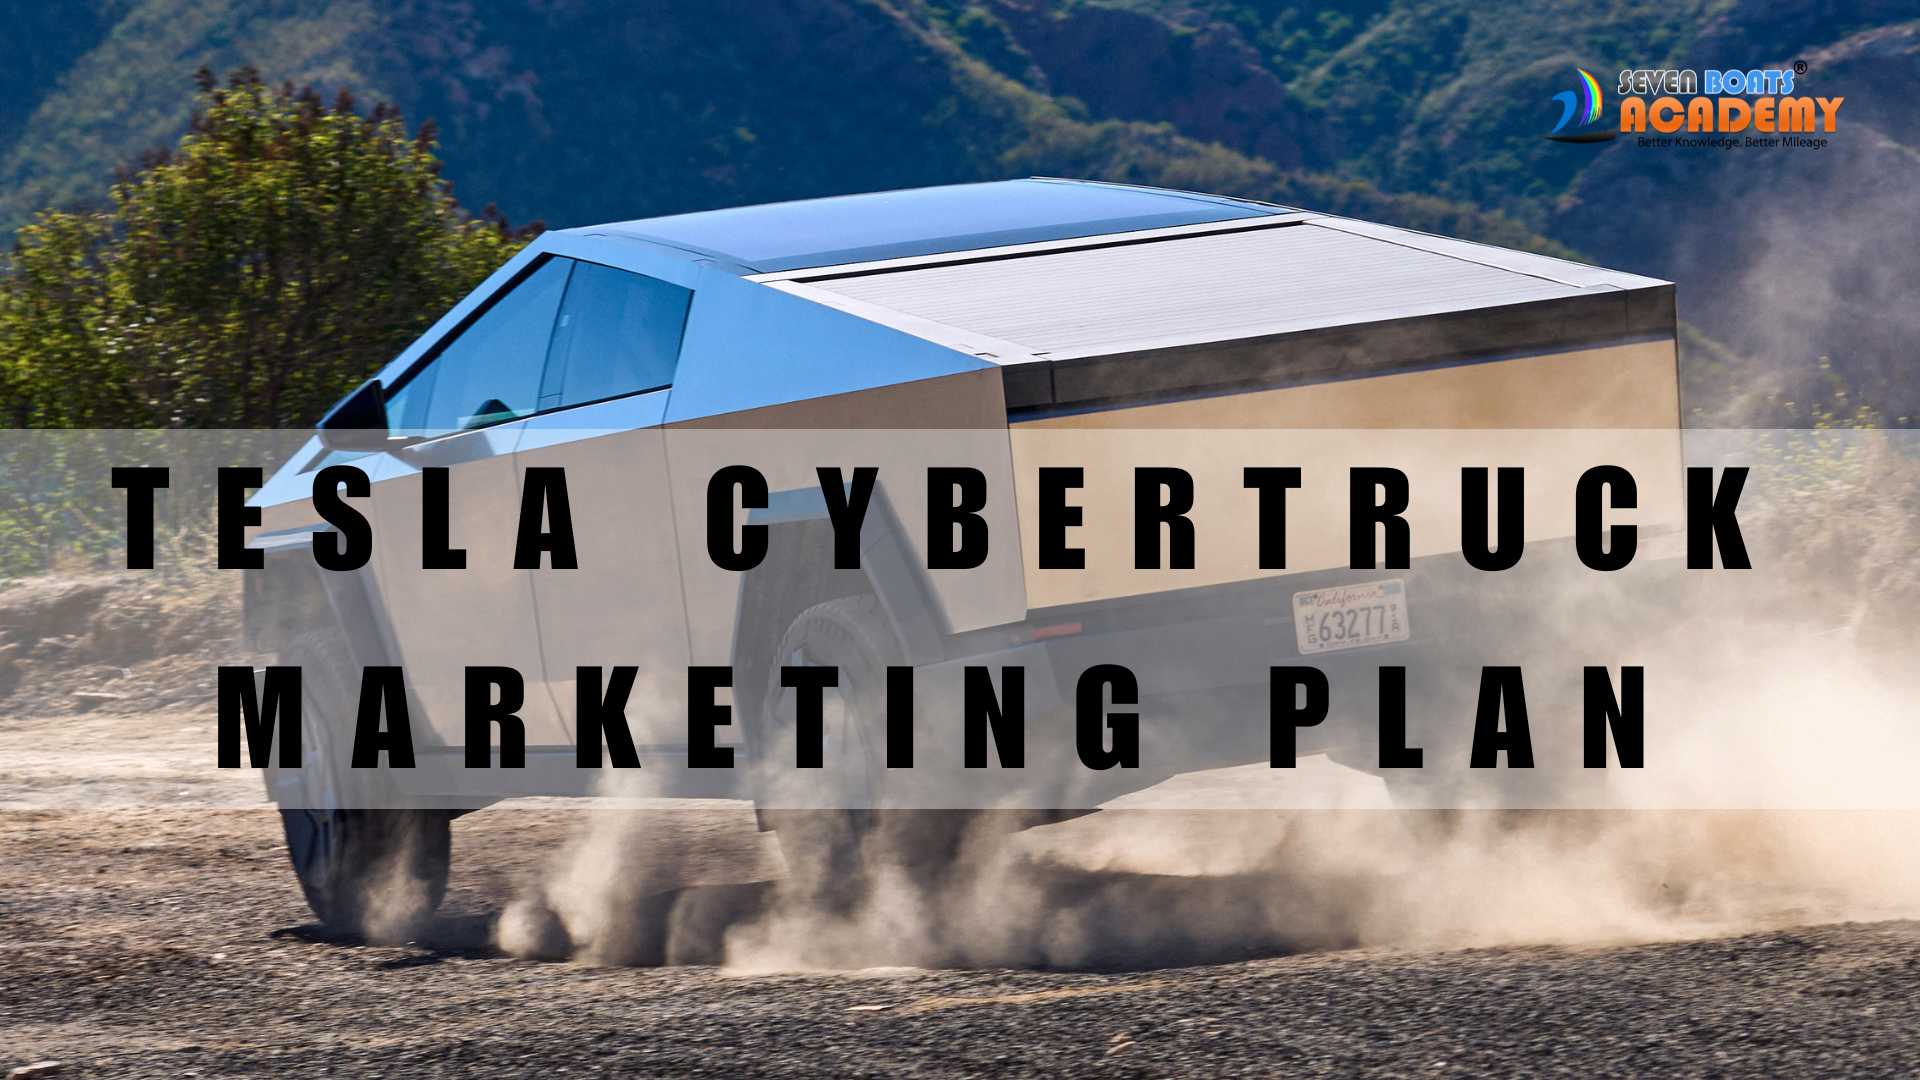 Tesla Cyber truck Marketing Plan